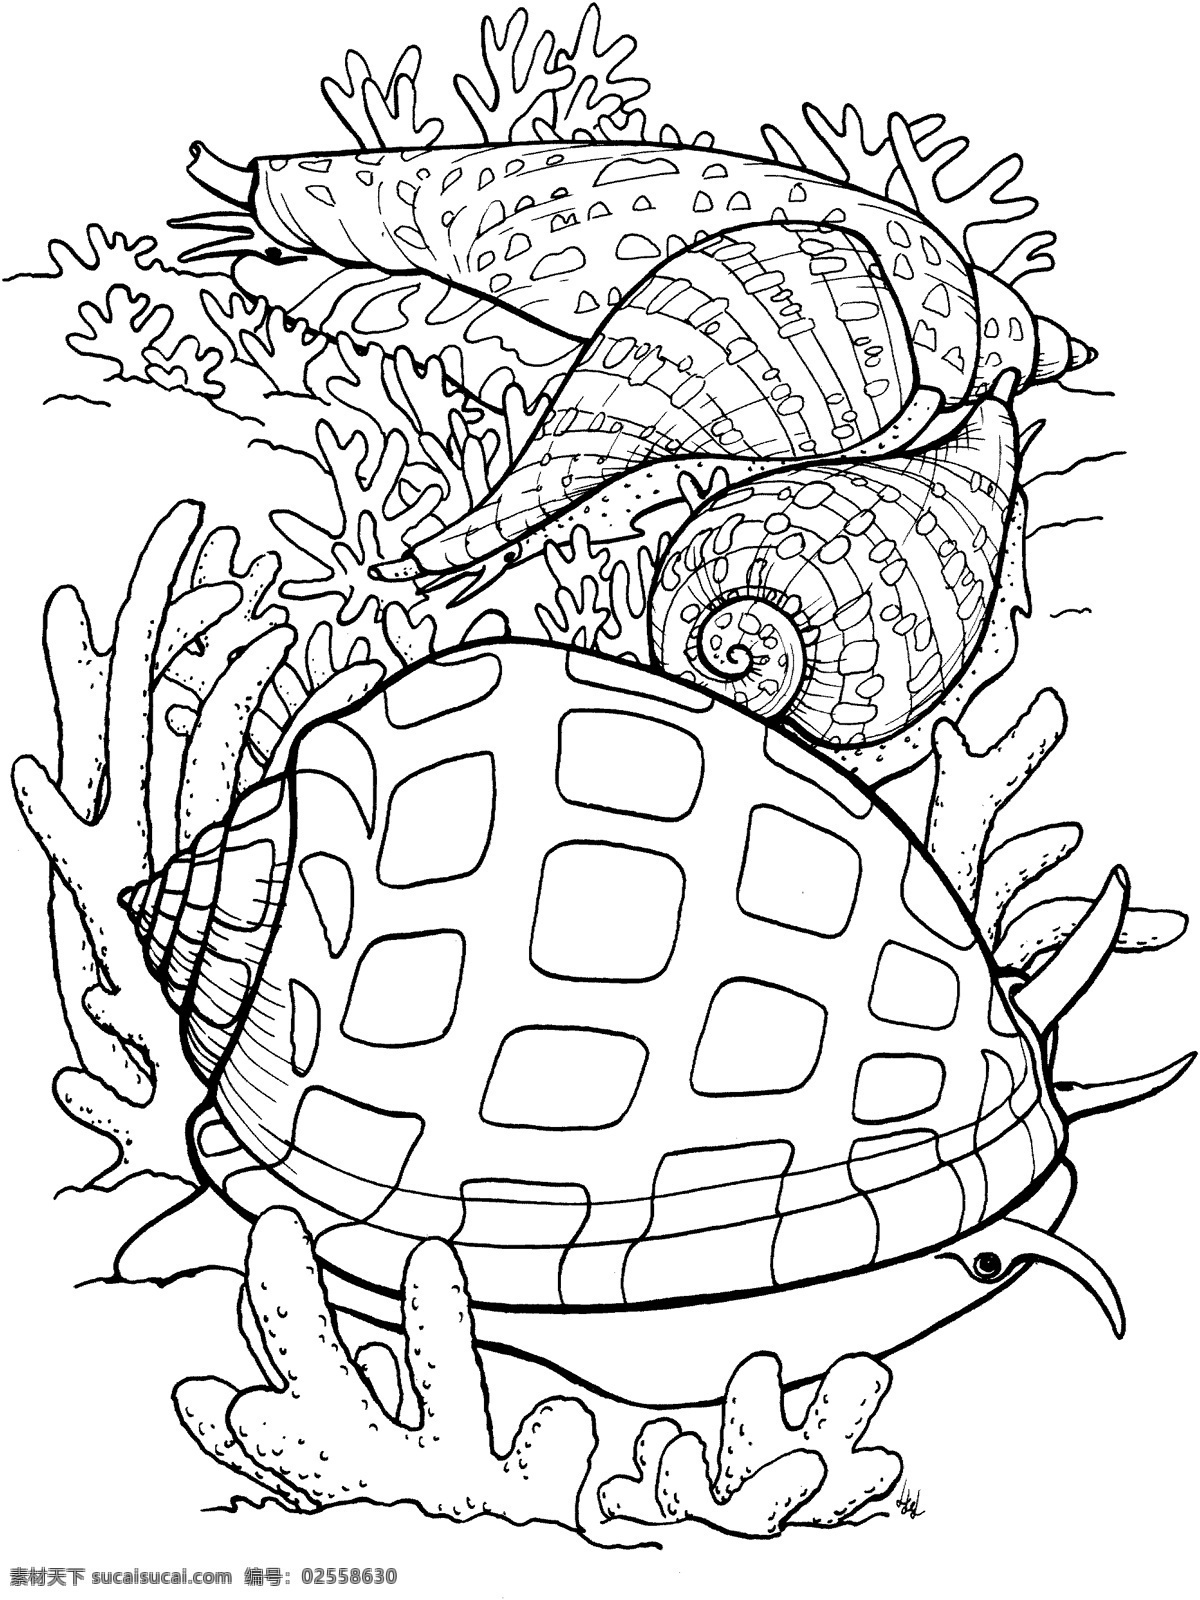 海贝 海螺 海贝海螺 动物素描 海洋生物 动物素材 海洋 动物 手绘 画 设计素材 动物专辑 素描速写 书画美术 白色